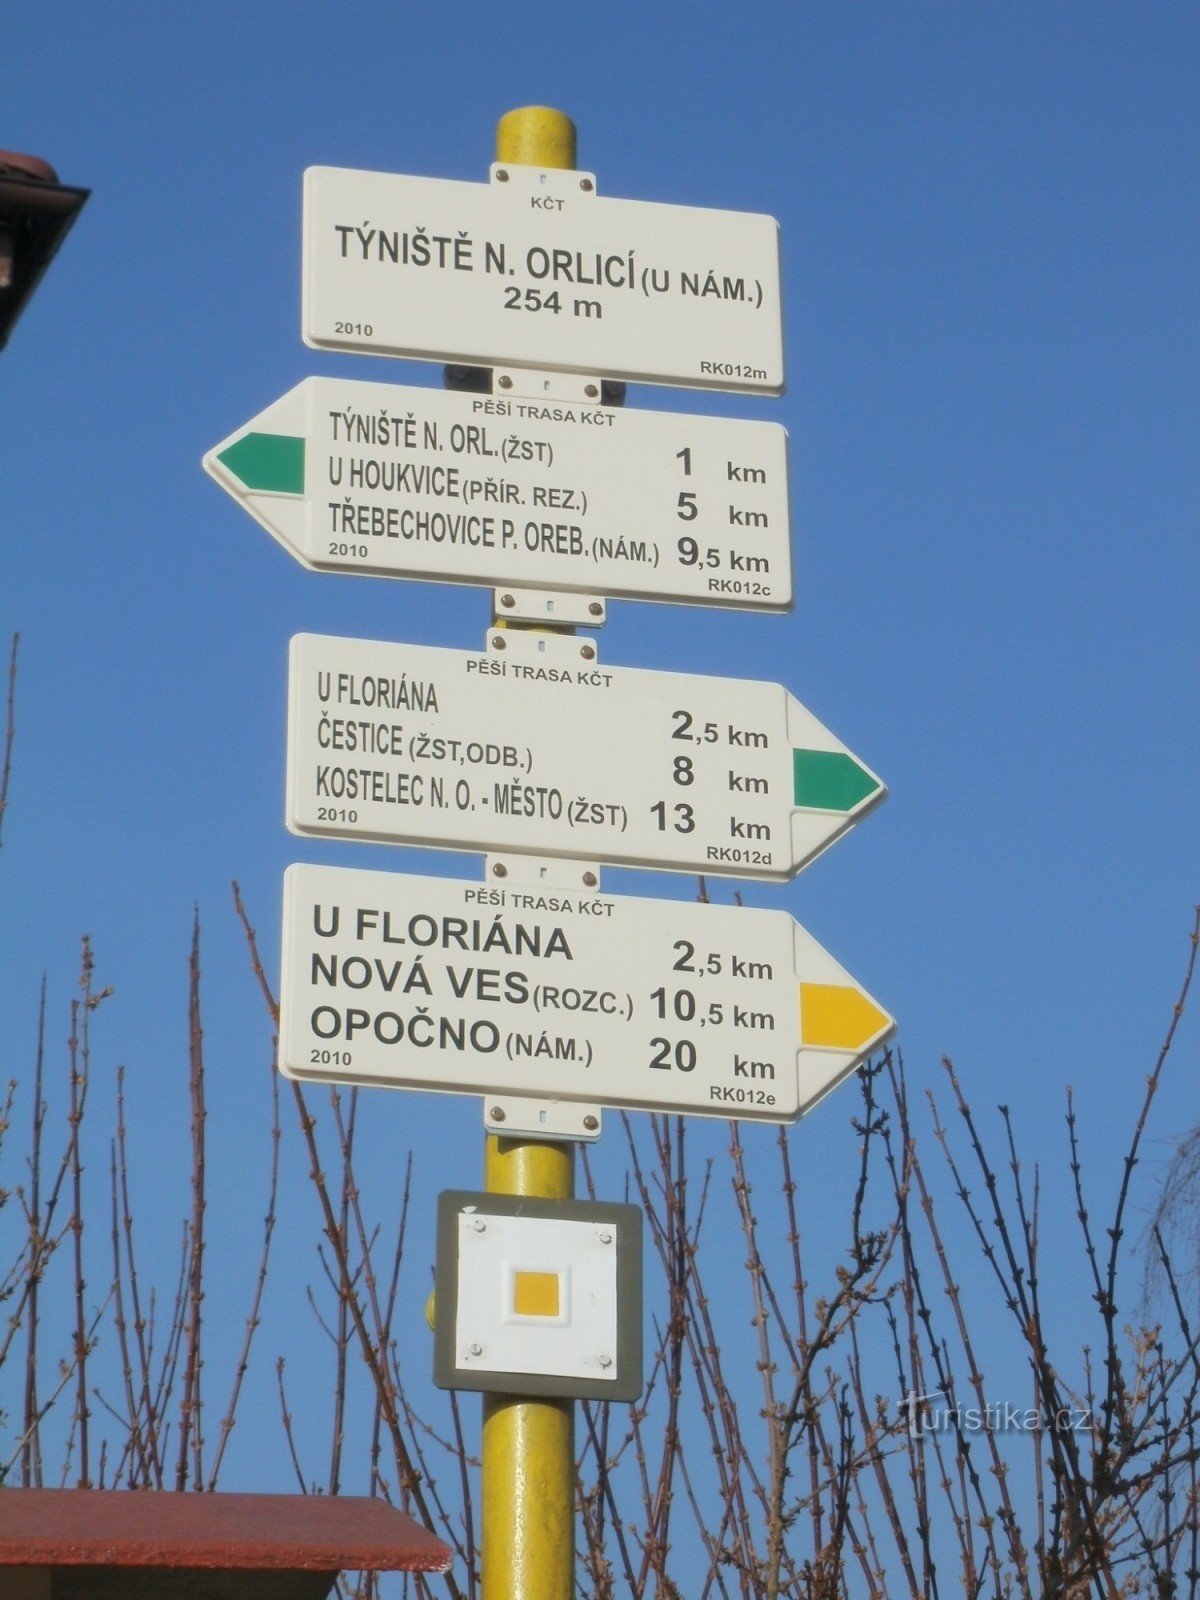 Týniště nad Orlicí - the main tourist signpost